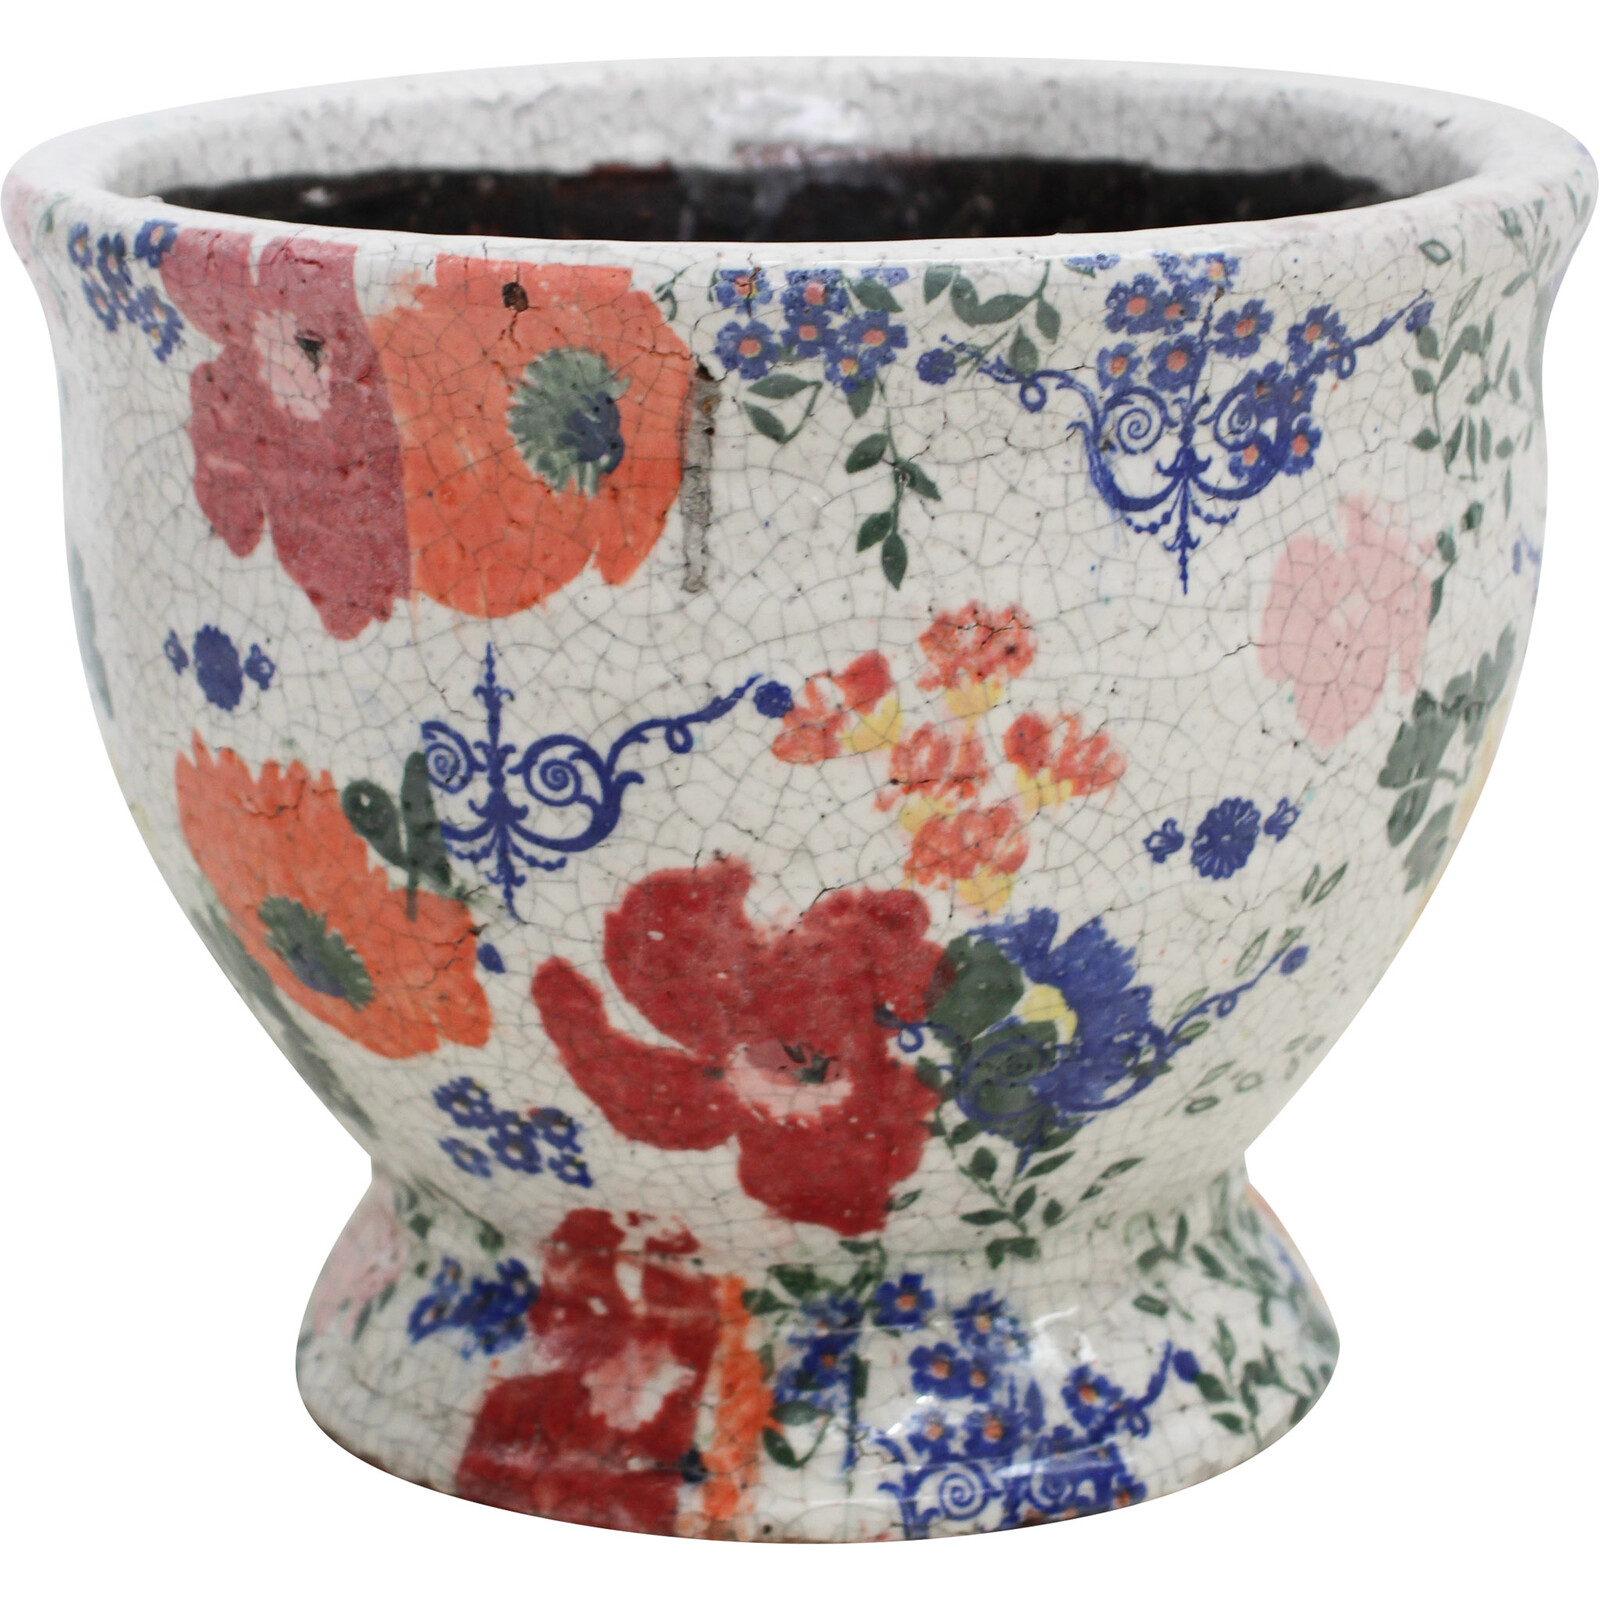 Pot Urn Lrg Antique Floral